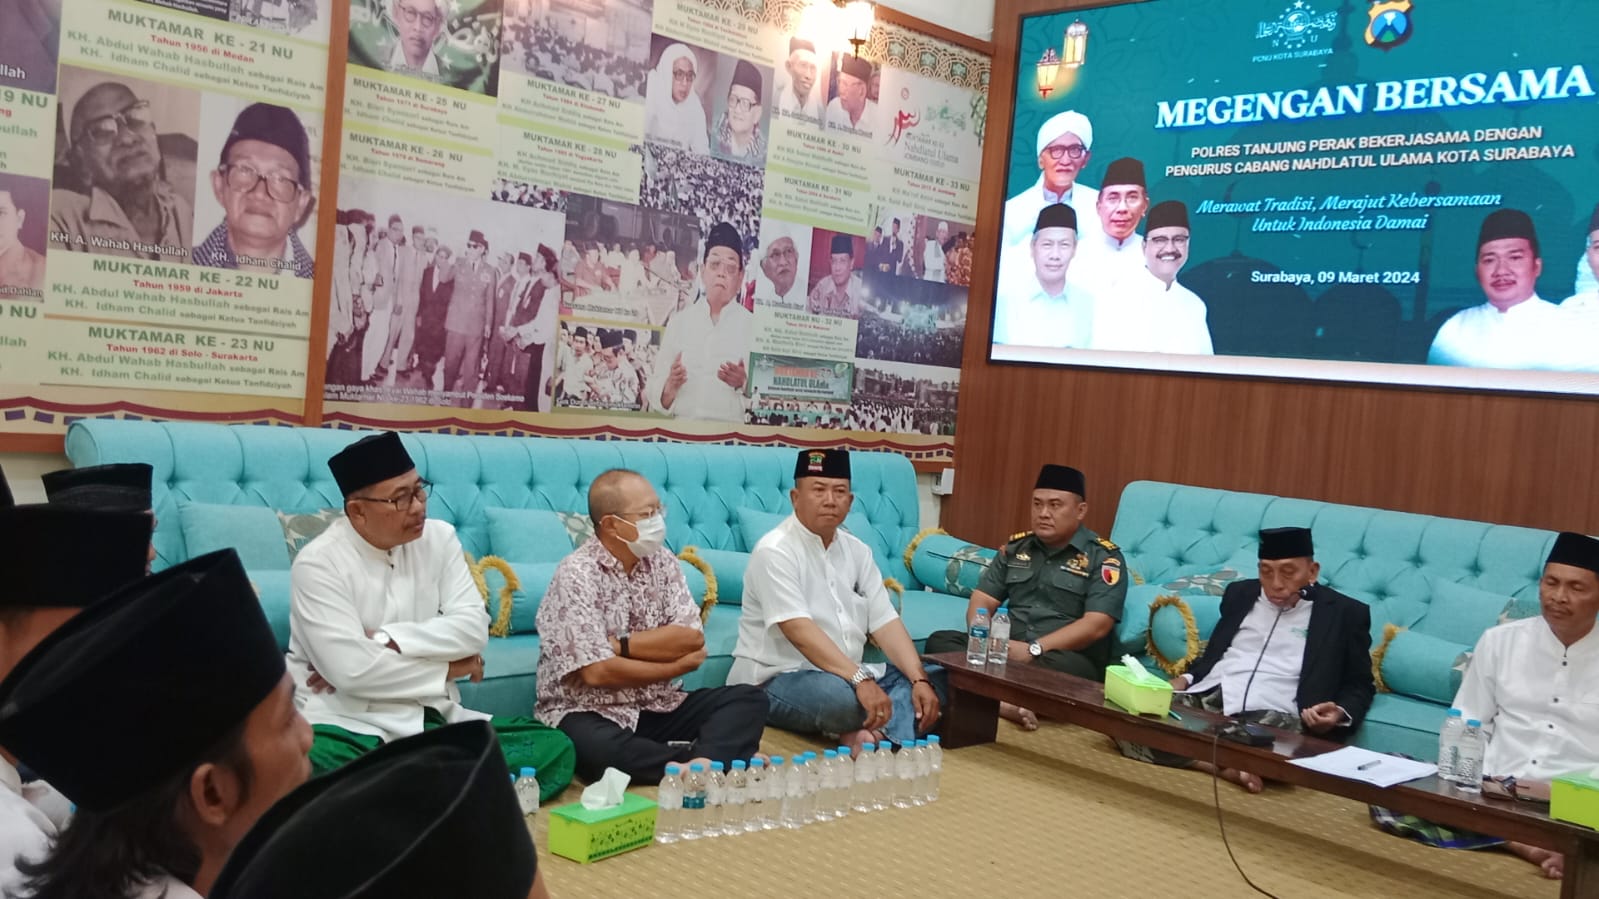 Polres Pelabuhan Tanjung Perak dan Warga NU Kota Surabaya Gelar Tradisi Megengan